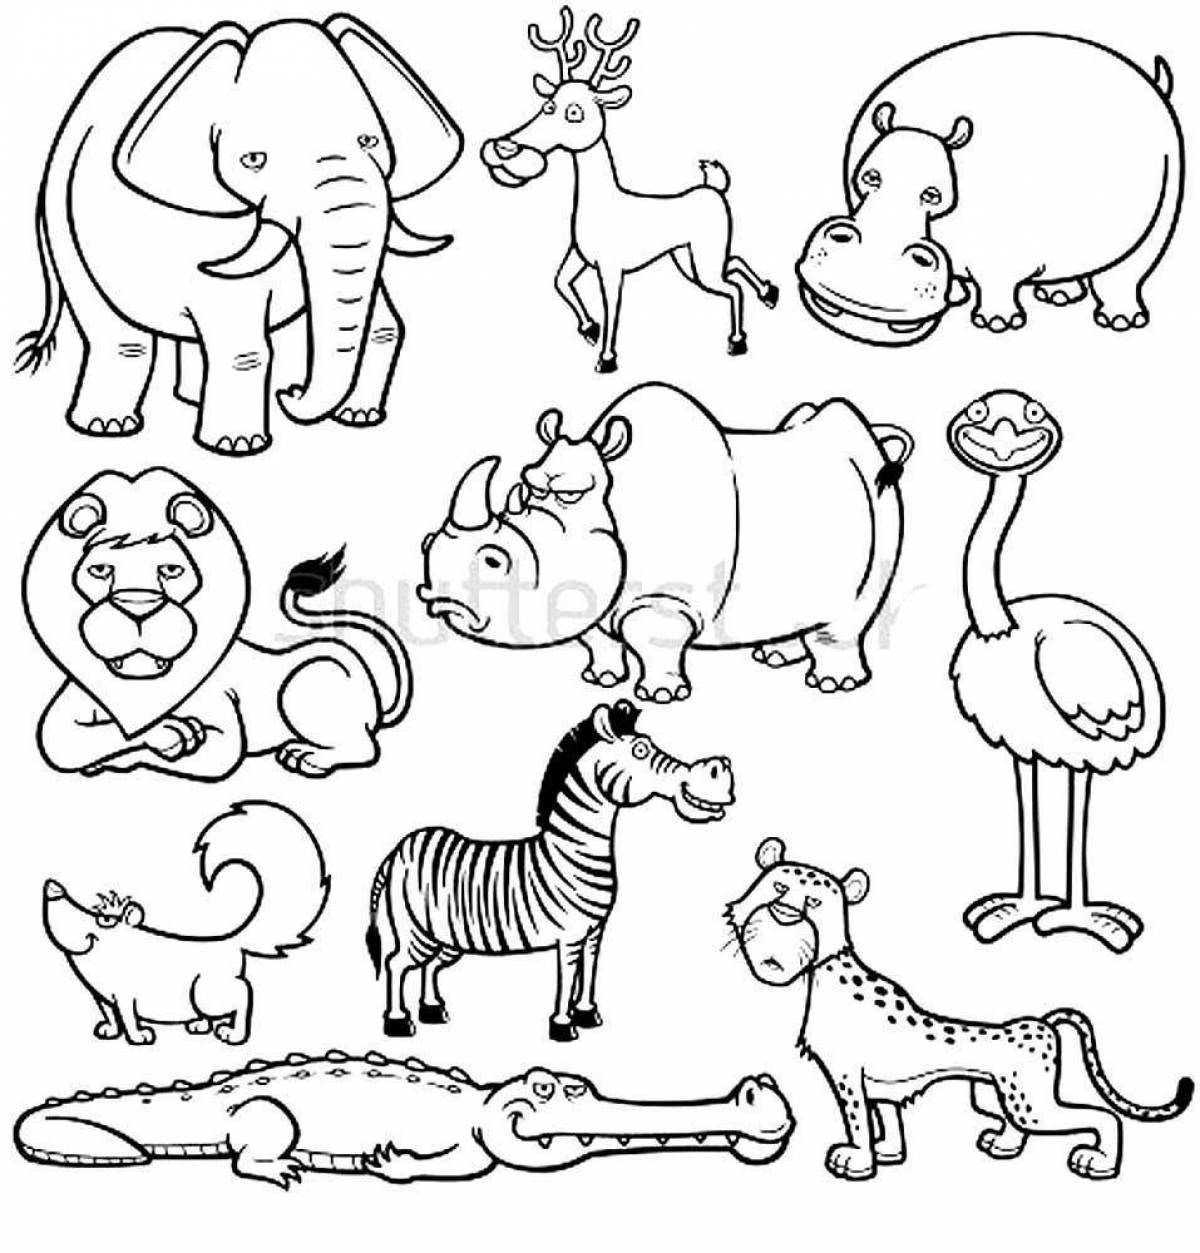 Очаровательная раскраска африканских животных для детей 3-4 лет